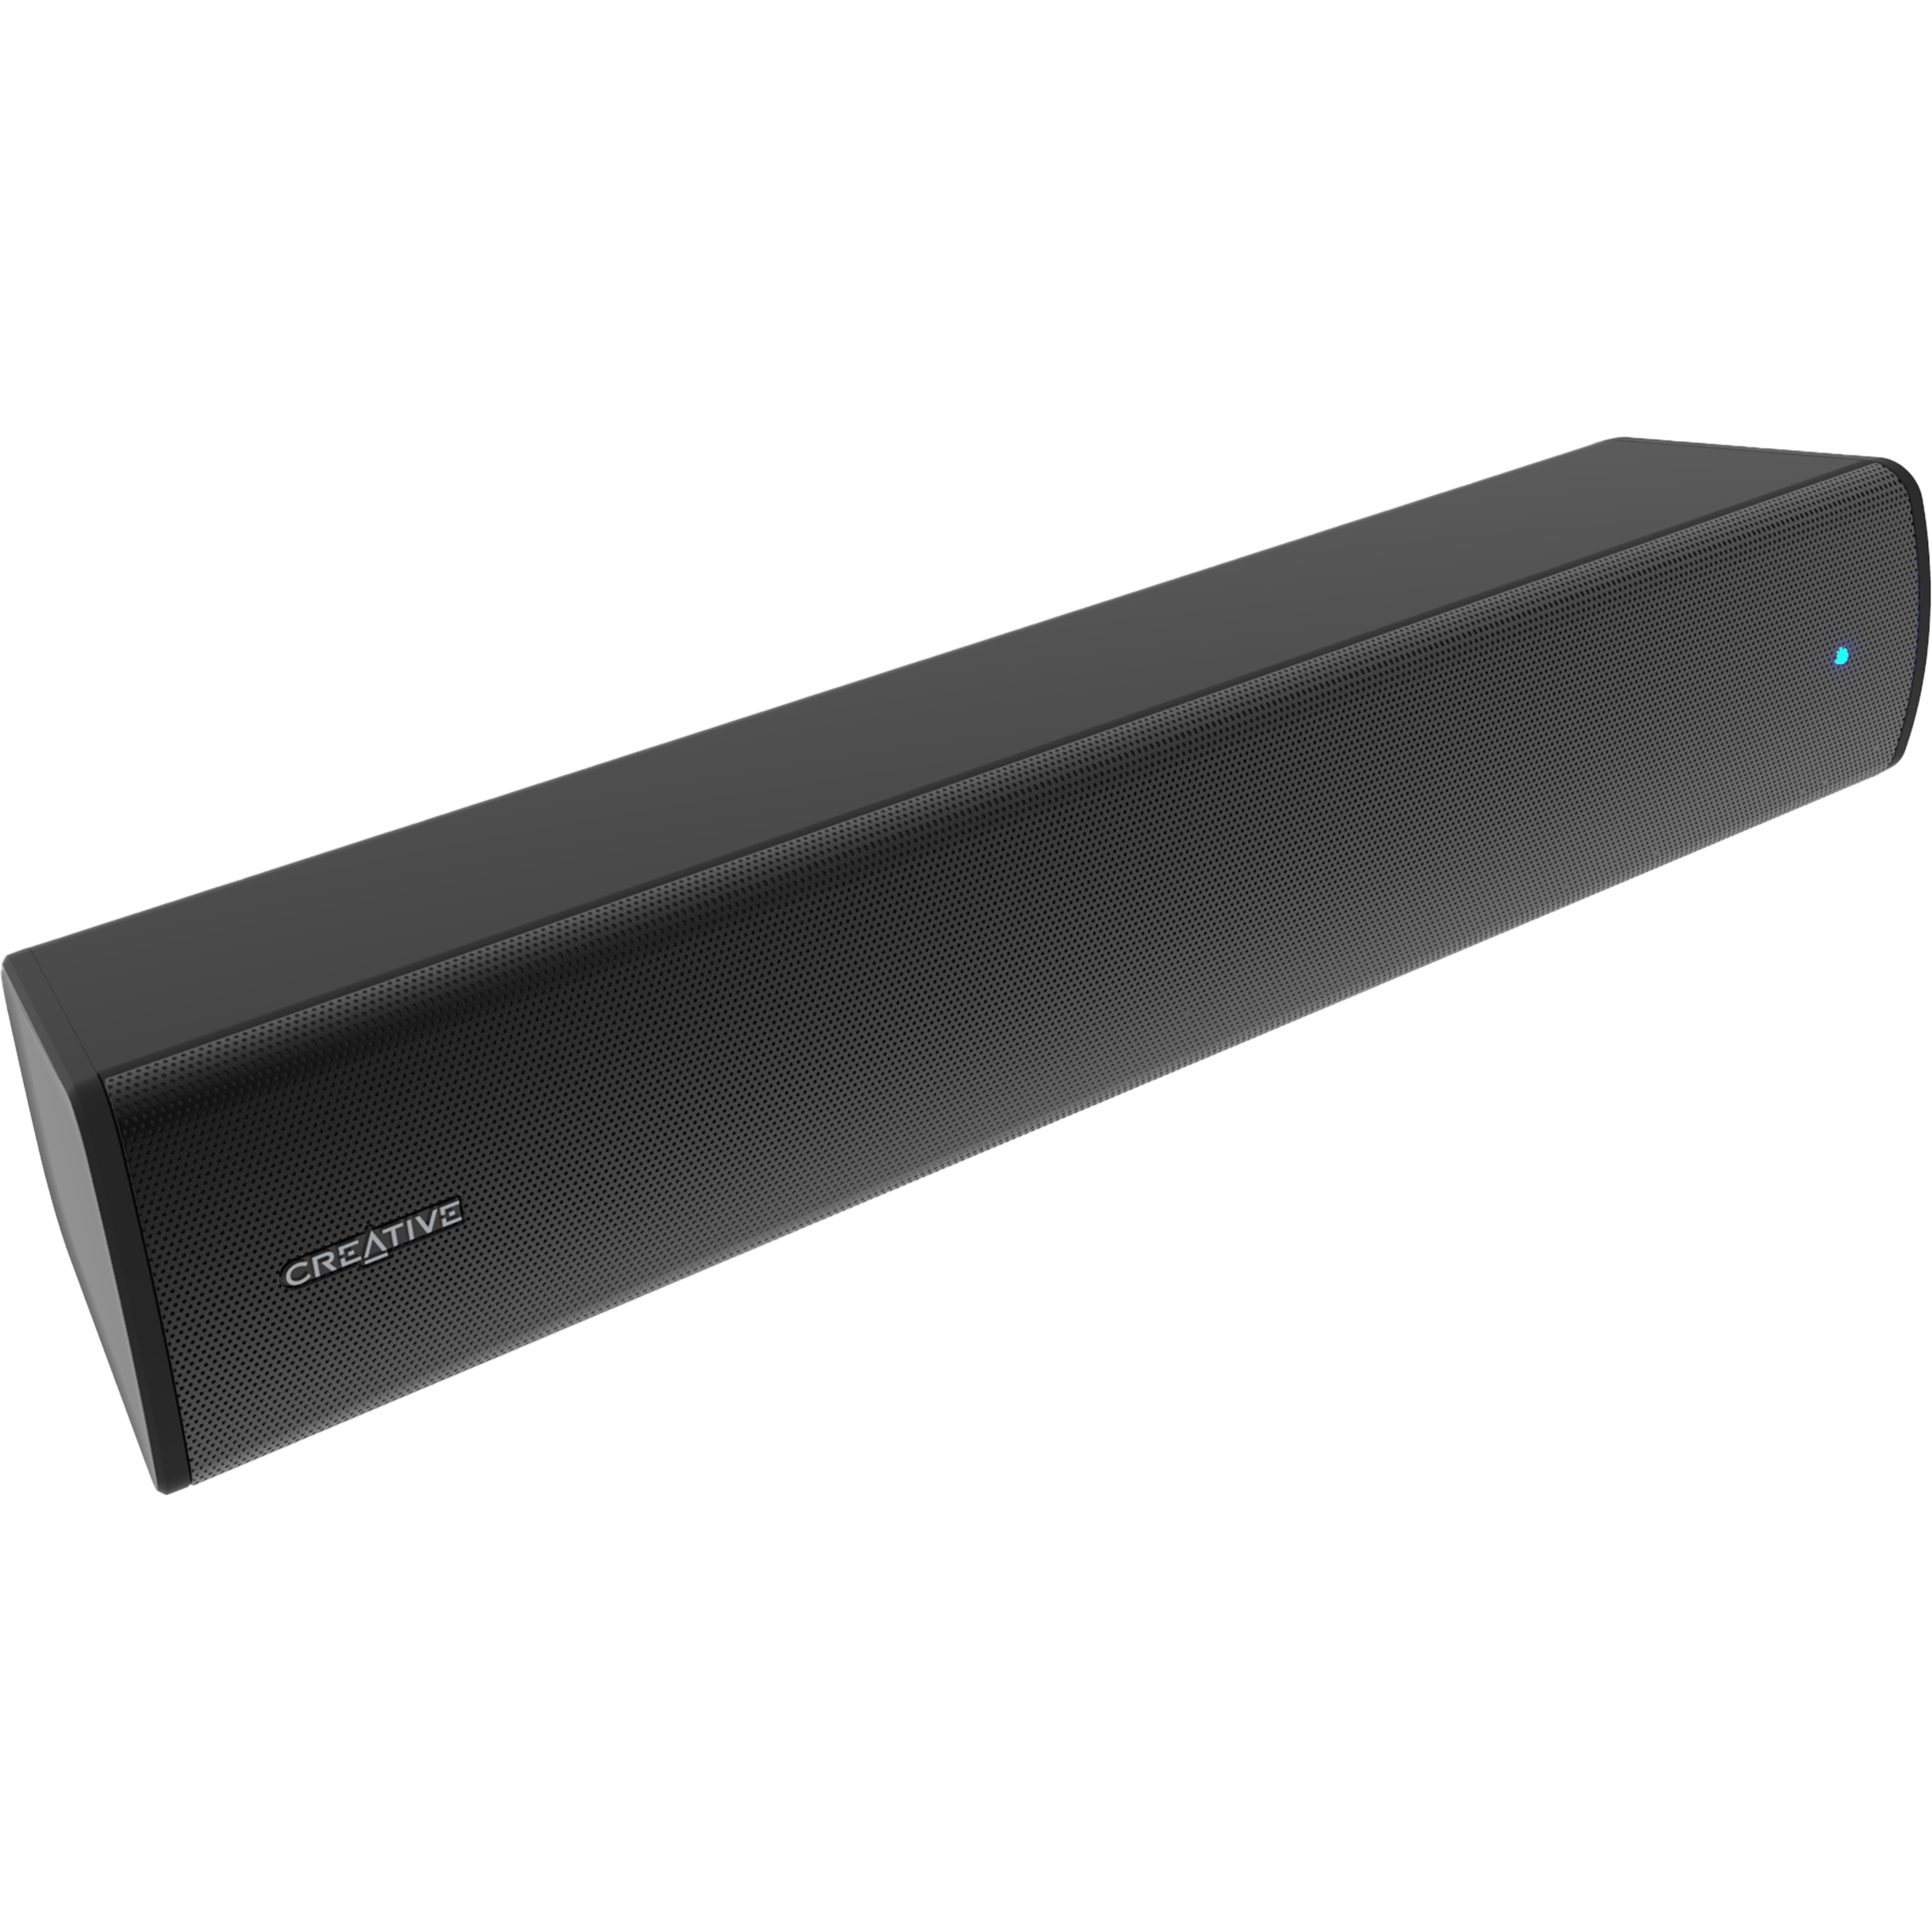 ' מקרני קול Creative Stage Air V2- Compact Under-monitor Soundbar for Computer with Bluetooth® AUX-in USB audio'